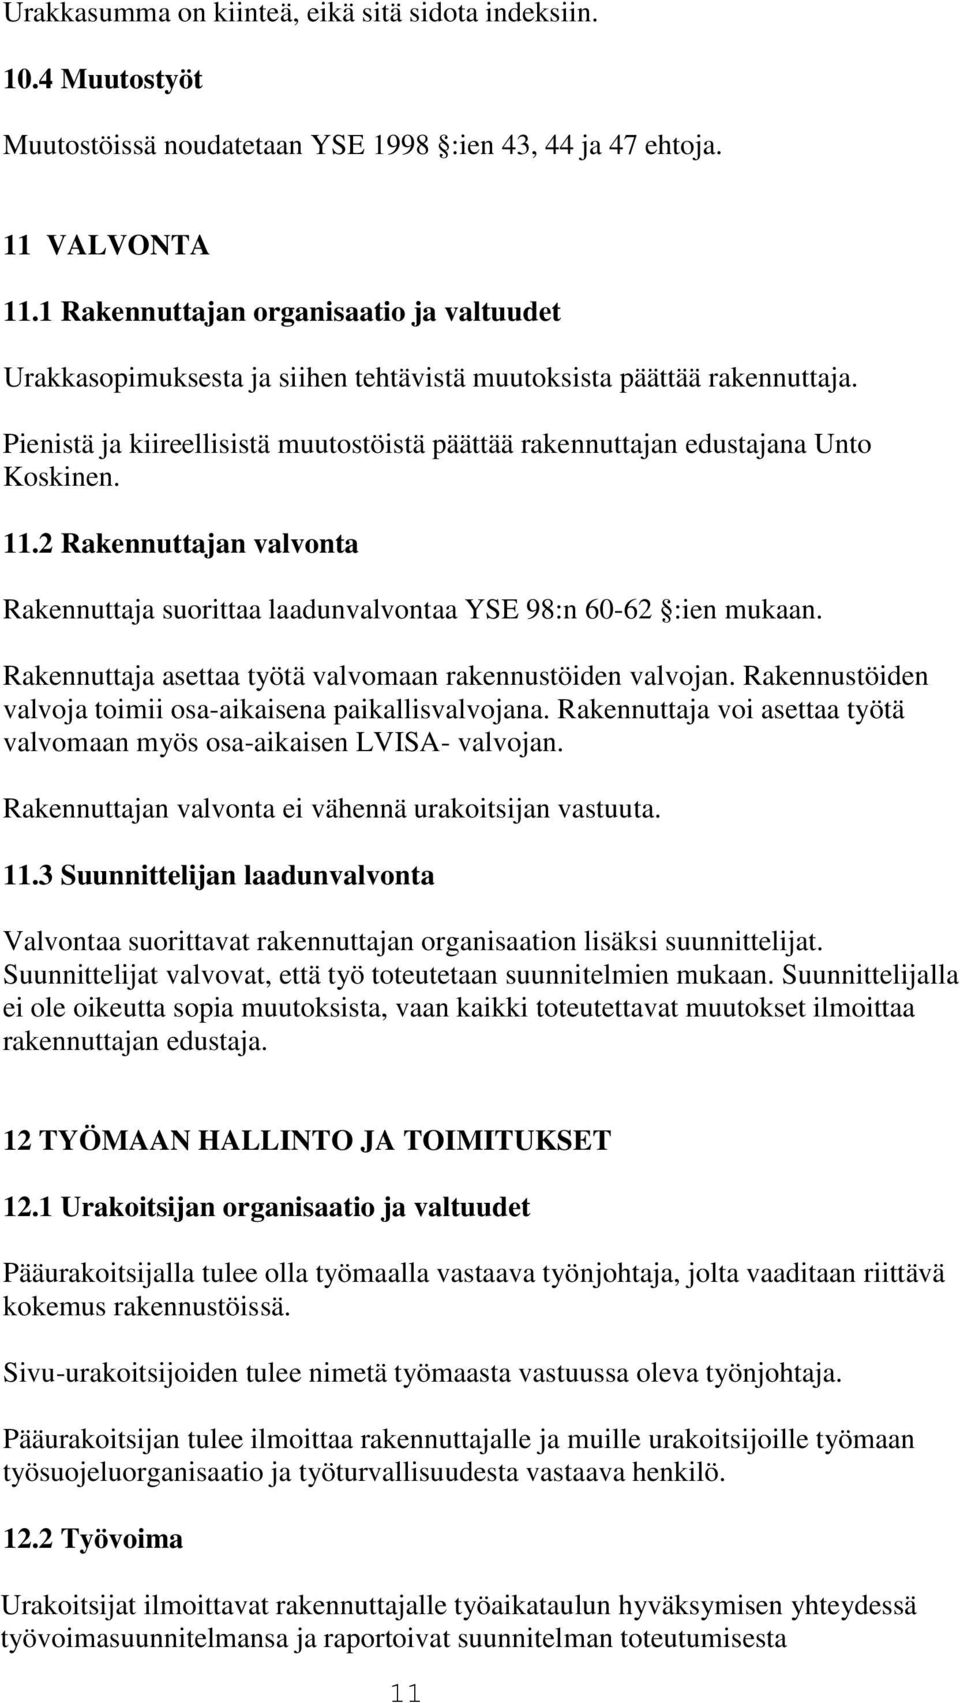 Pienistä ja kiireellisistä muutostöistä päättää rakennuttajan edustajana Unto Koskinen. 11.2 Rakennuttajan valvonta Rakennuttaja suorittaa laadunvalvontaa YSE 98:n 60-62 :ien mukaan.